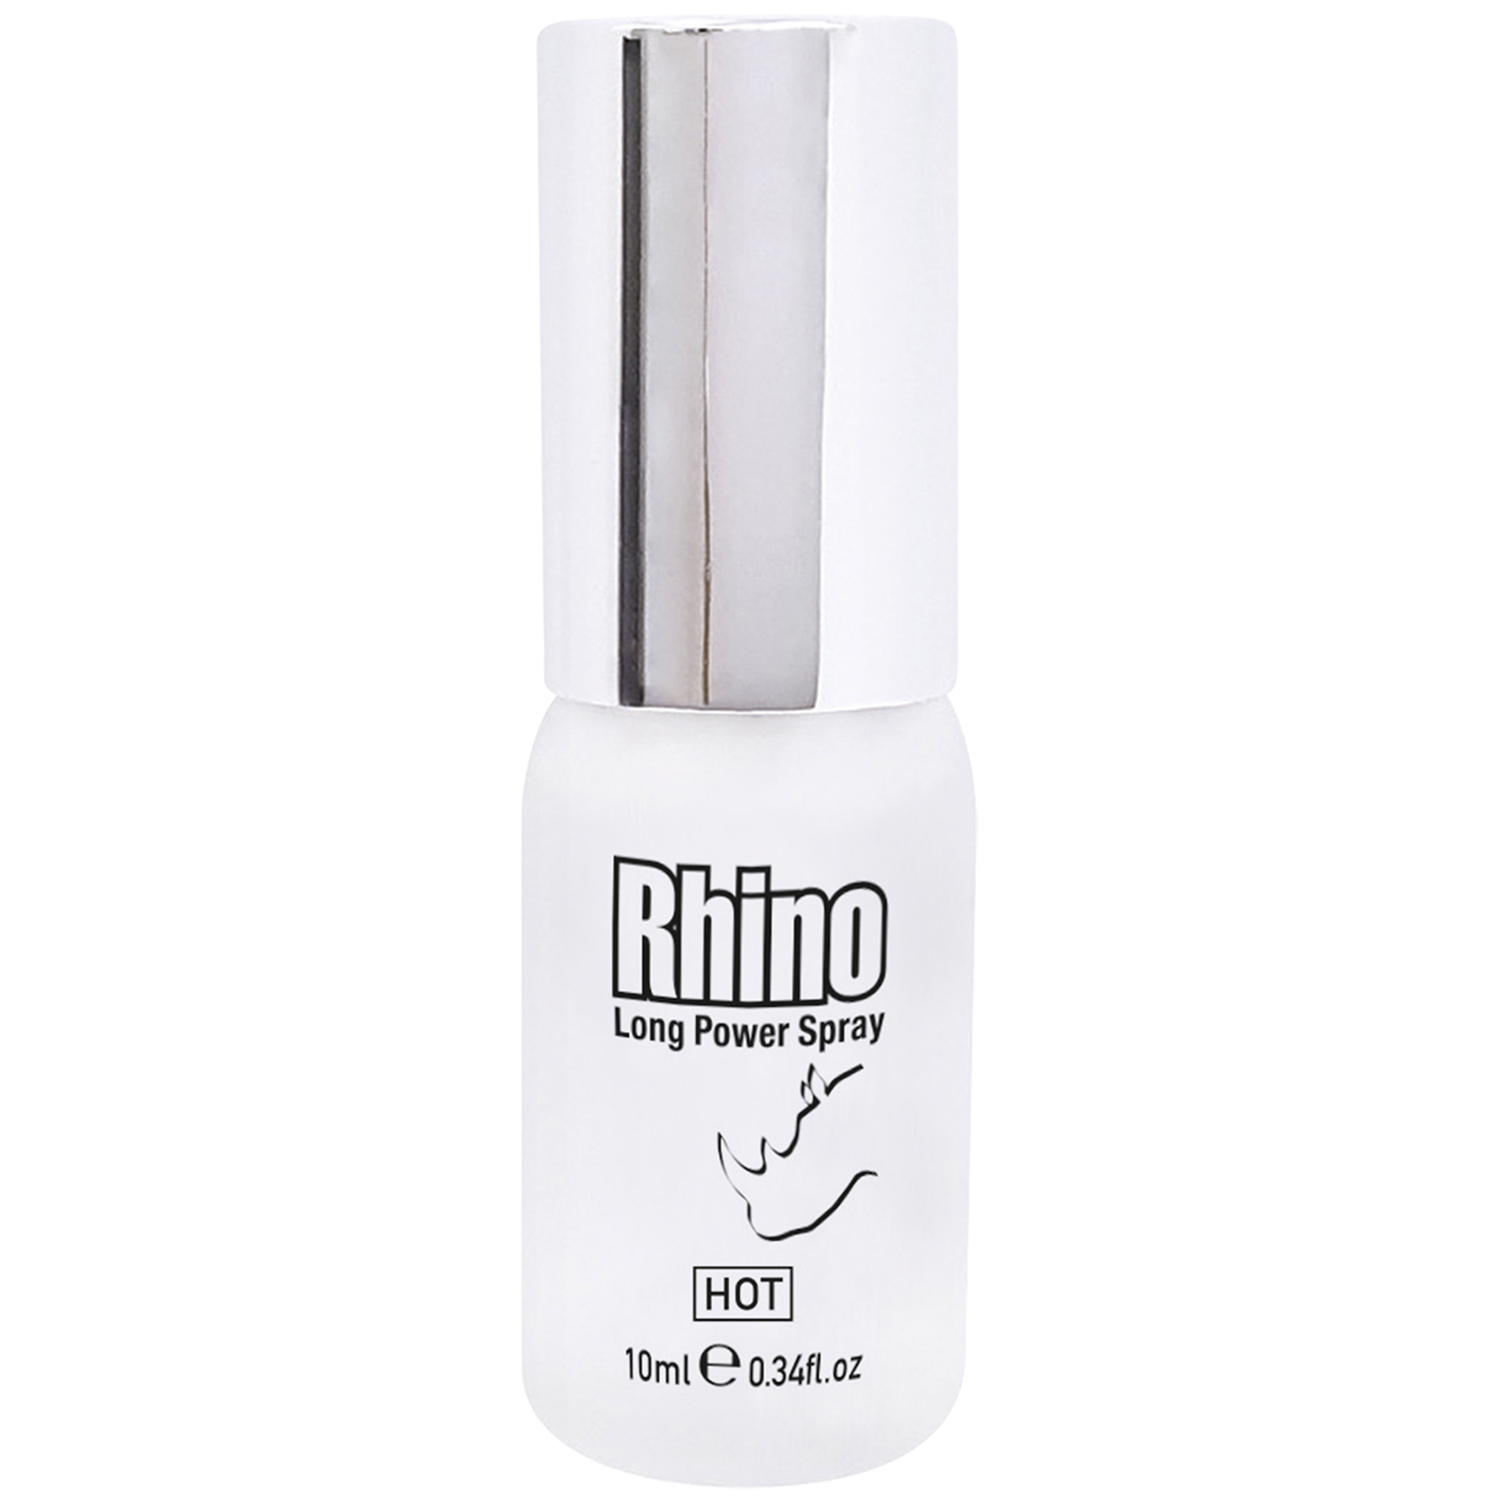 Rhino Hot Long Power Spray 10 ml - Klar